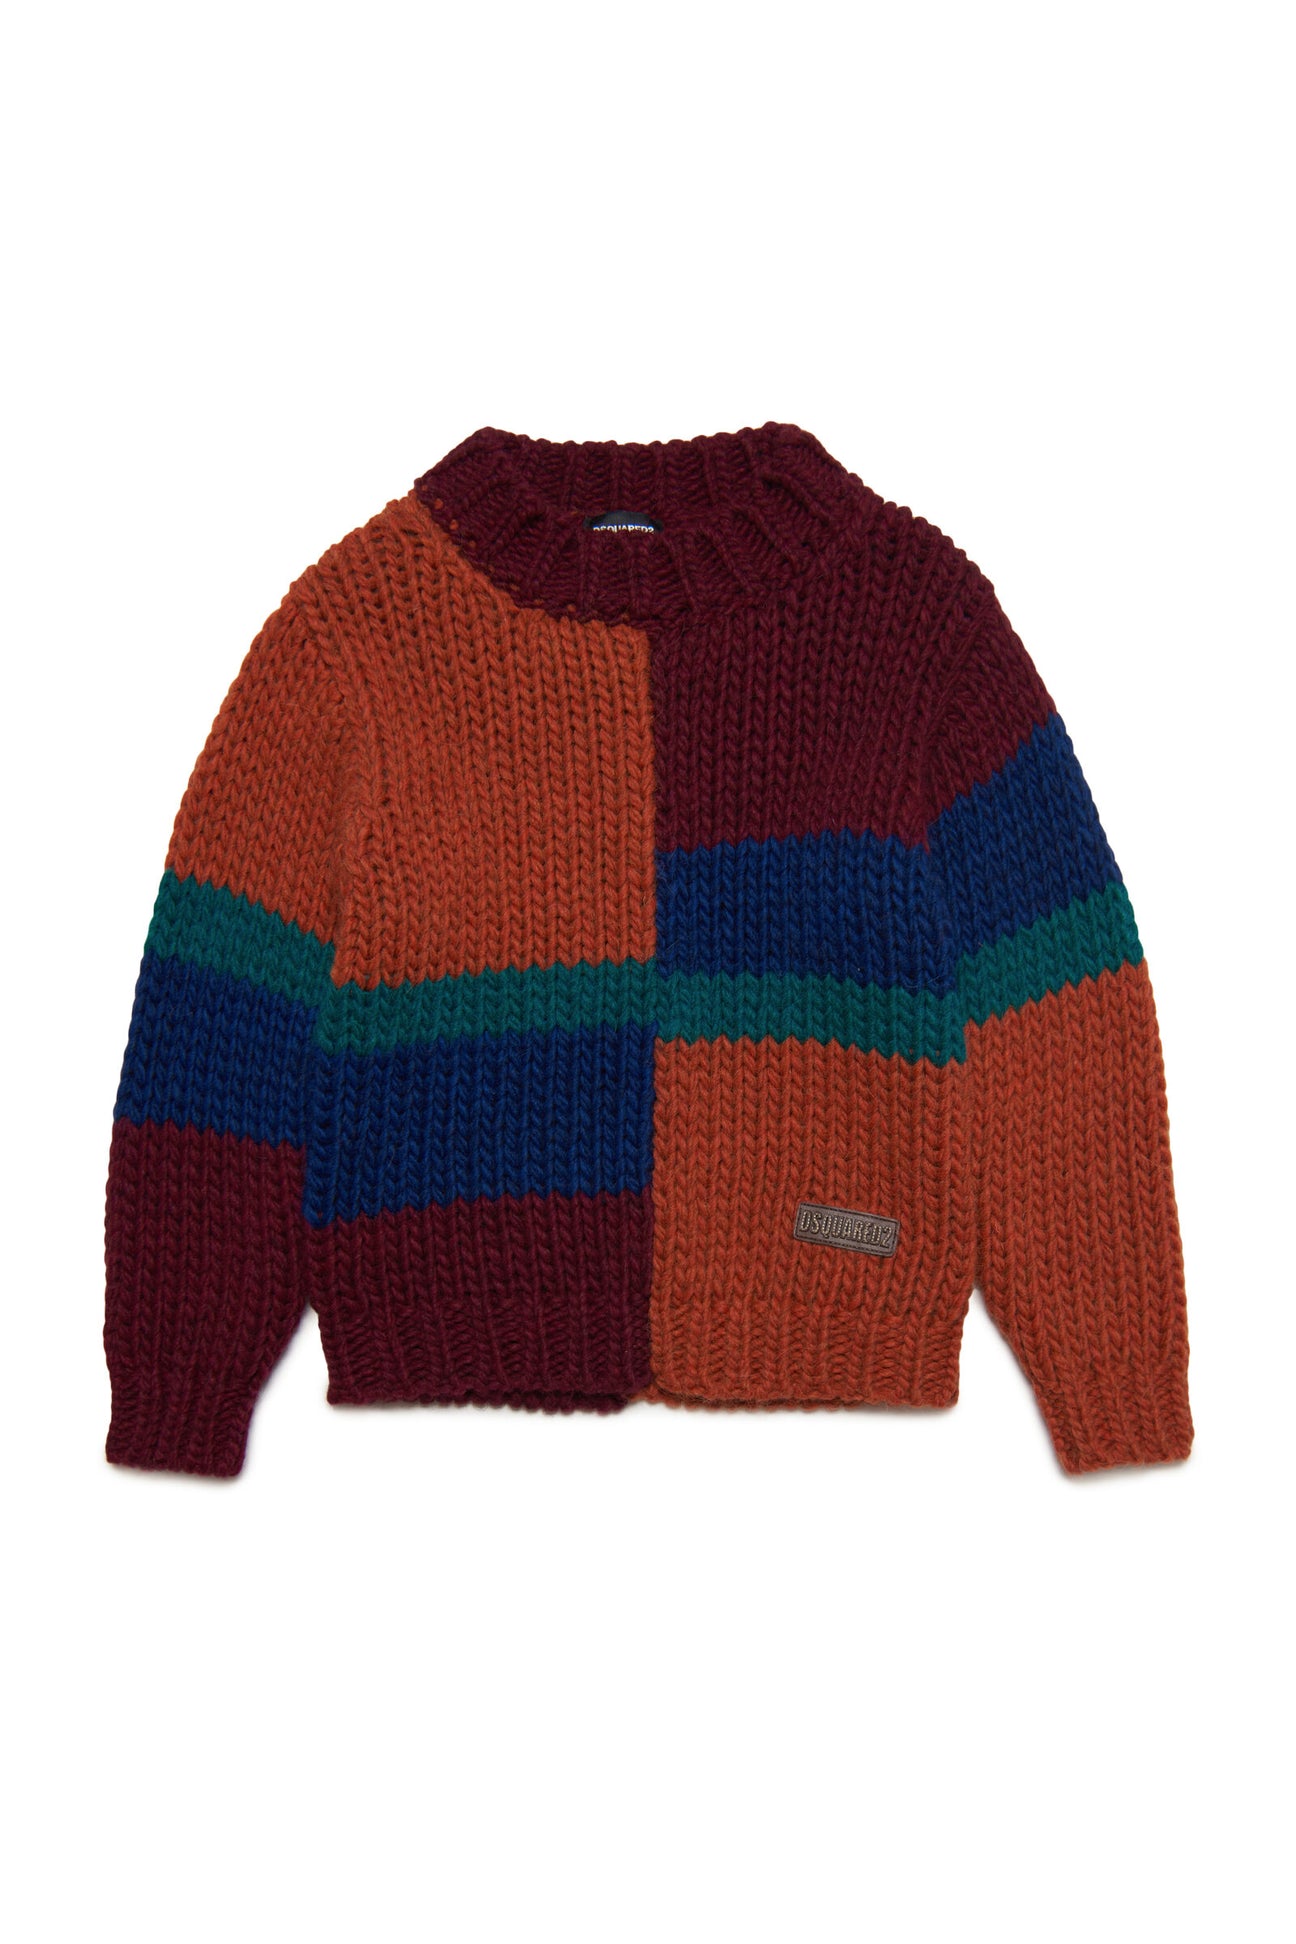 Jersey de cuello redondo en mezcla de lana con bloques de color 